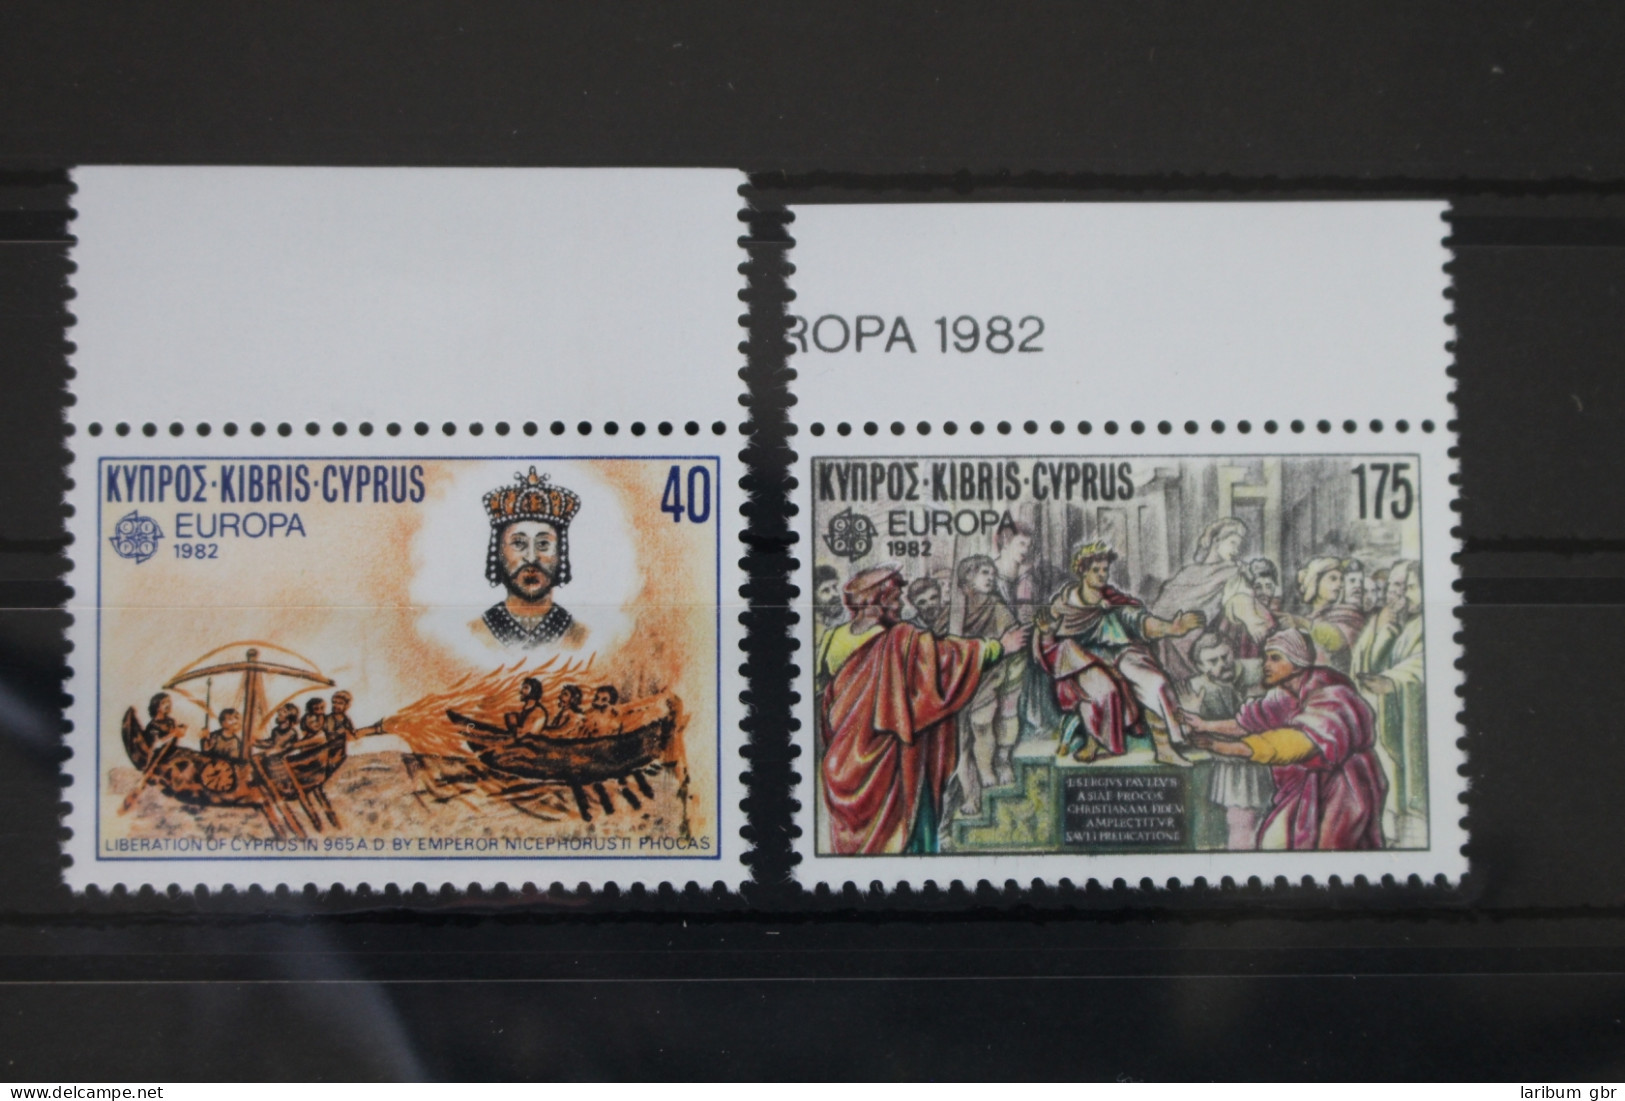 Zypern 566-567 Postfrisch Europa: Historische Ereignisse #WB412 - Used Stamps